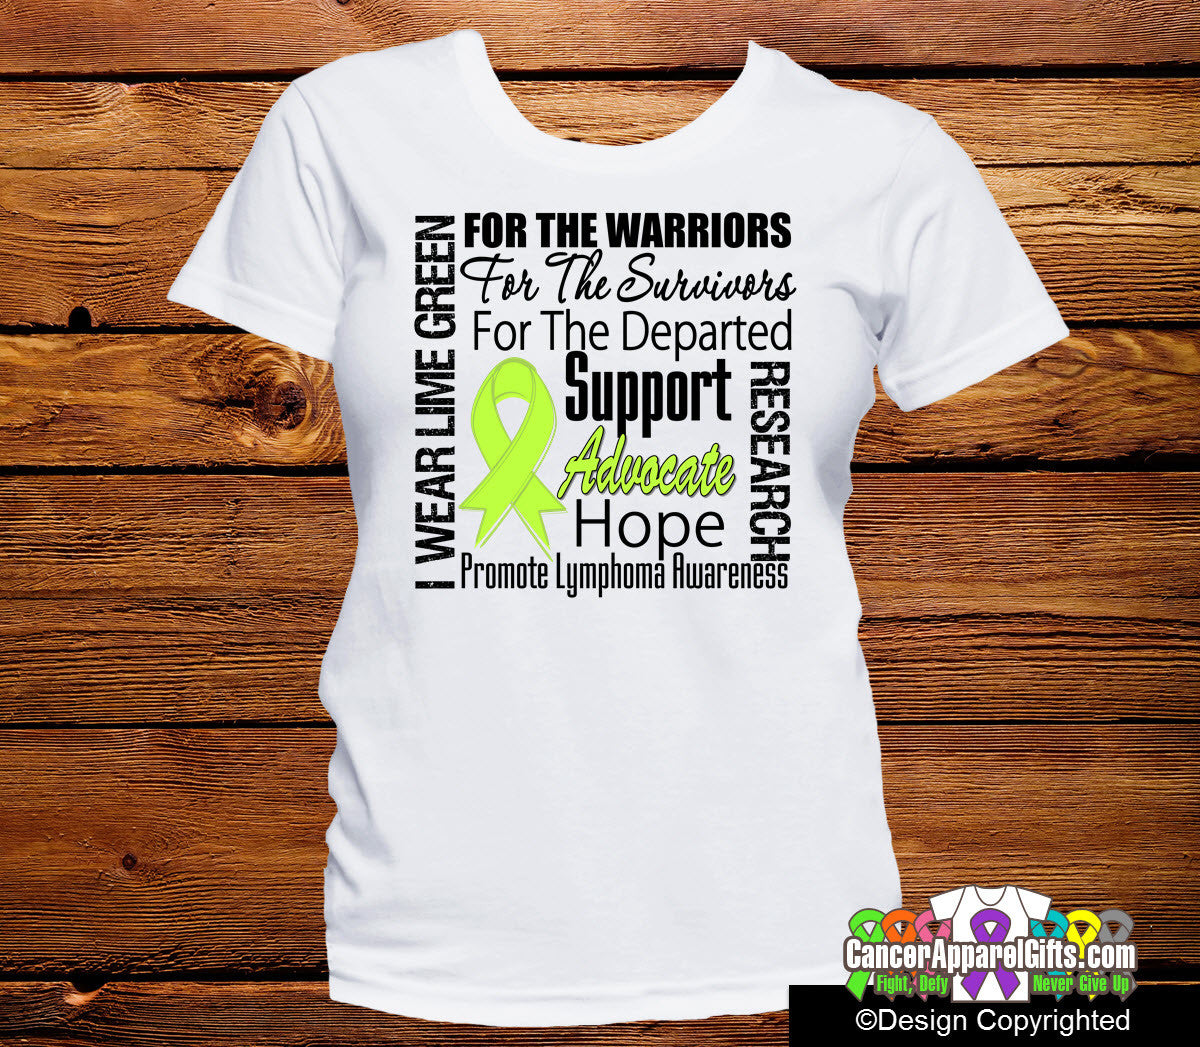 Lymphoma Awareness Tribute Shirts